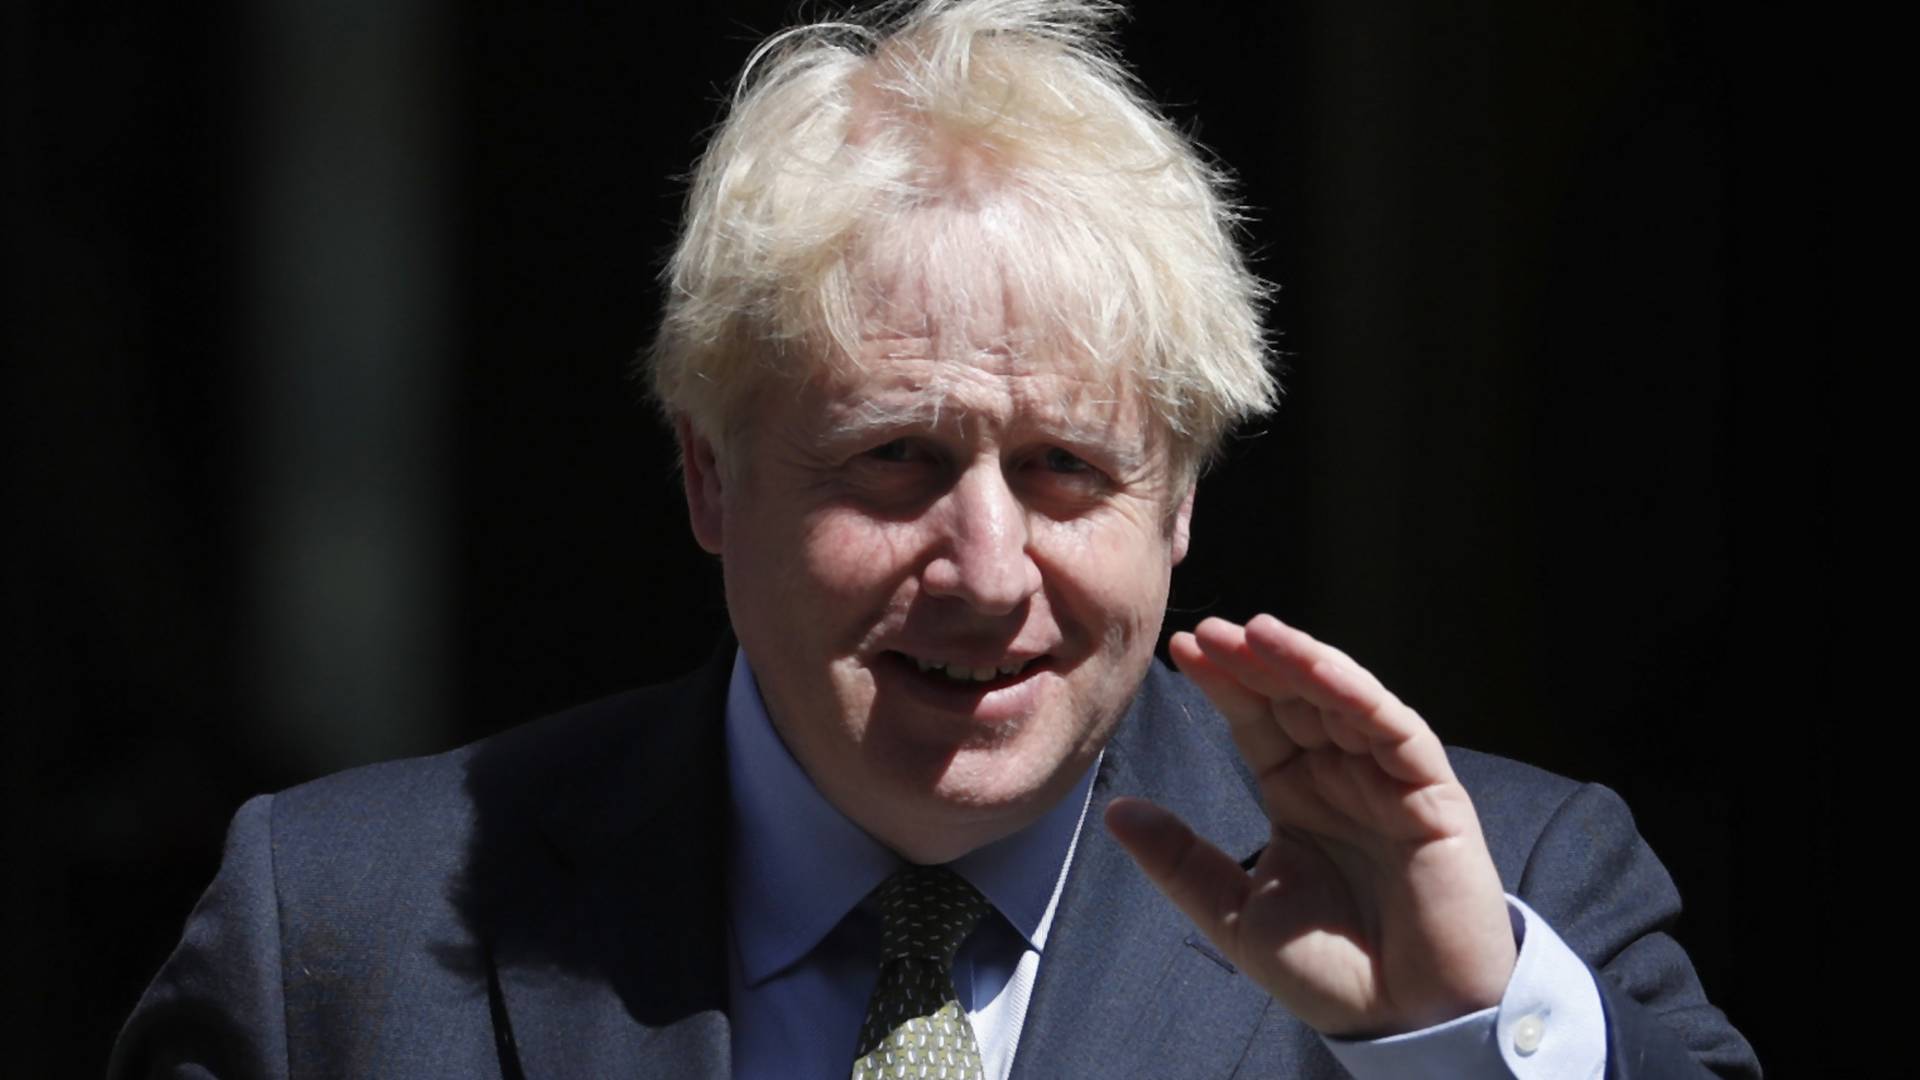 Boris Johnson zakaże terapii konwersyjnej? "Nie ma miejsca dla takich praktyk w cywilizowanym społeczeństwie"